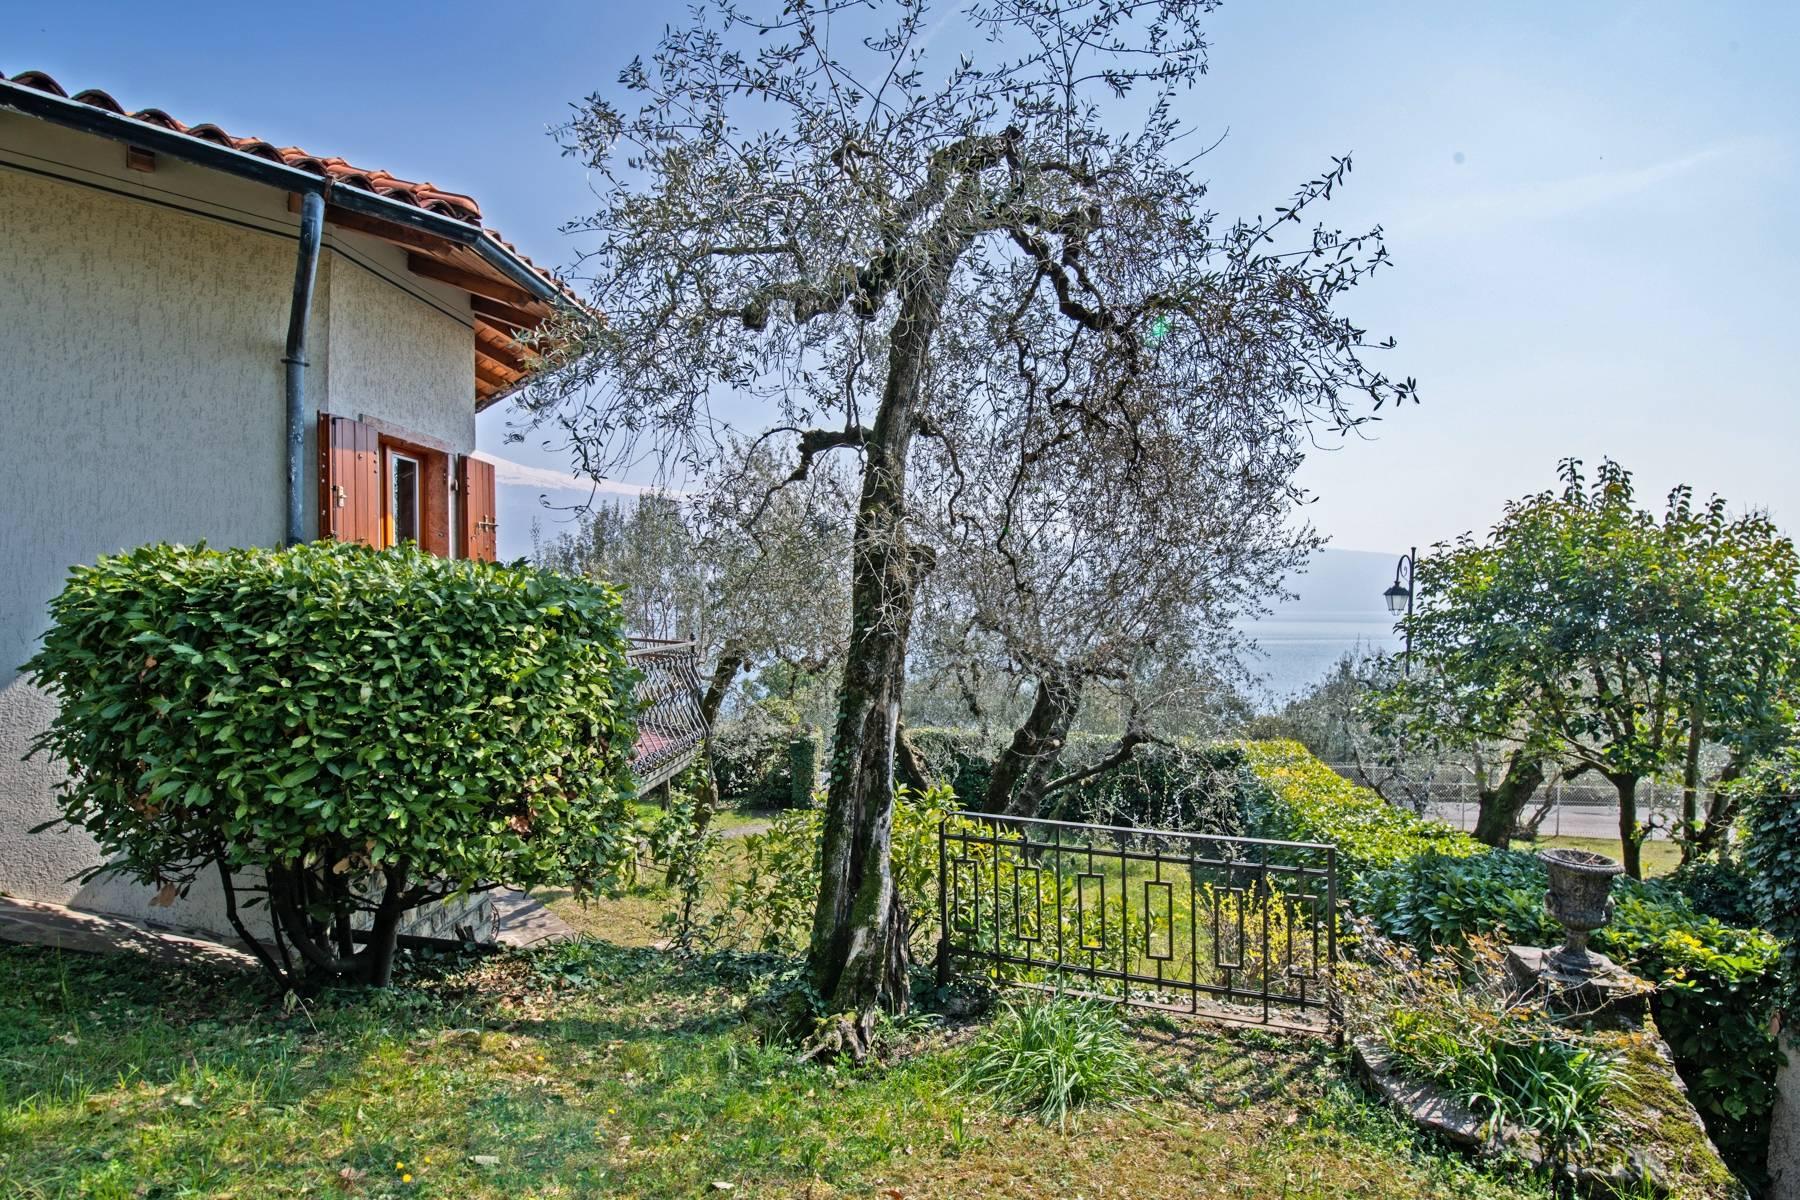 Villa in Gargnano inmitten der Olivenbäume vom Gardasee mit herrlichem Seeblick - 30